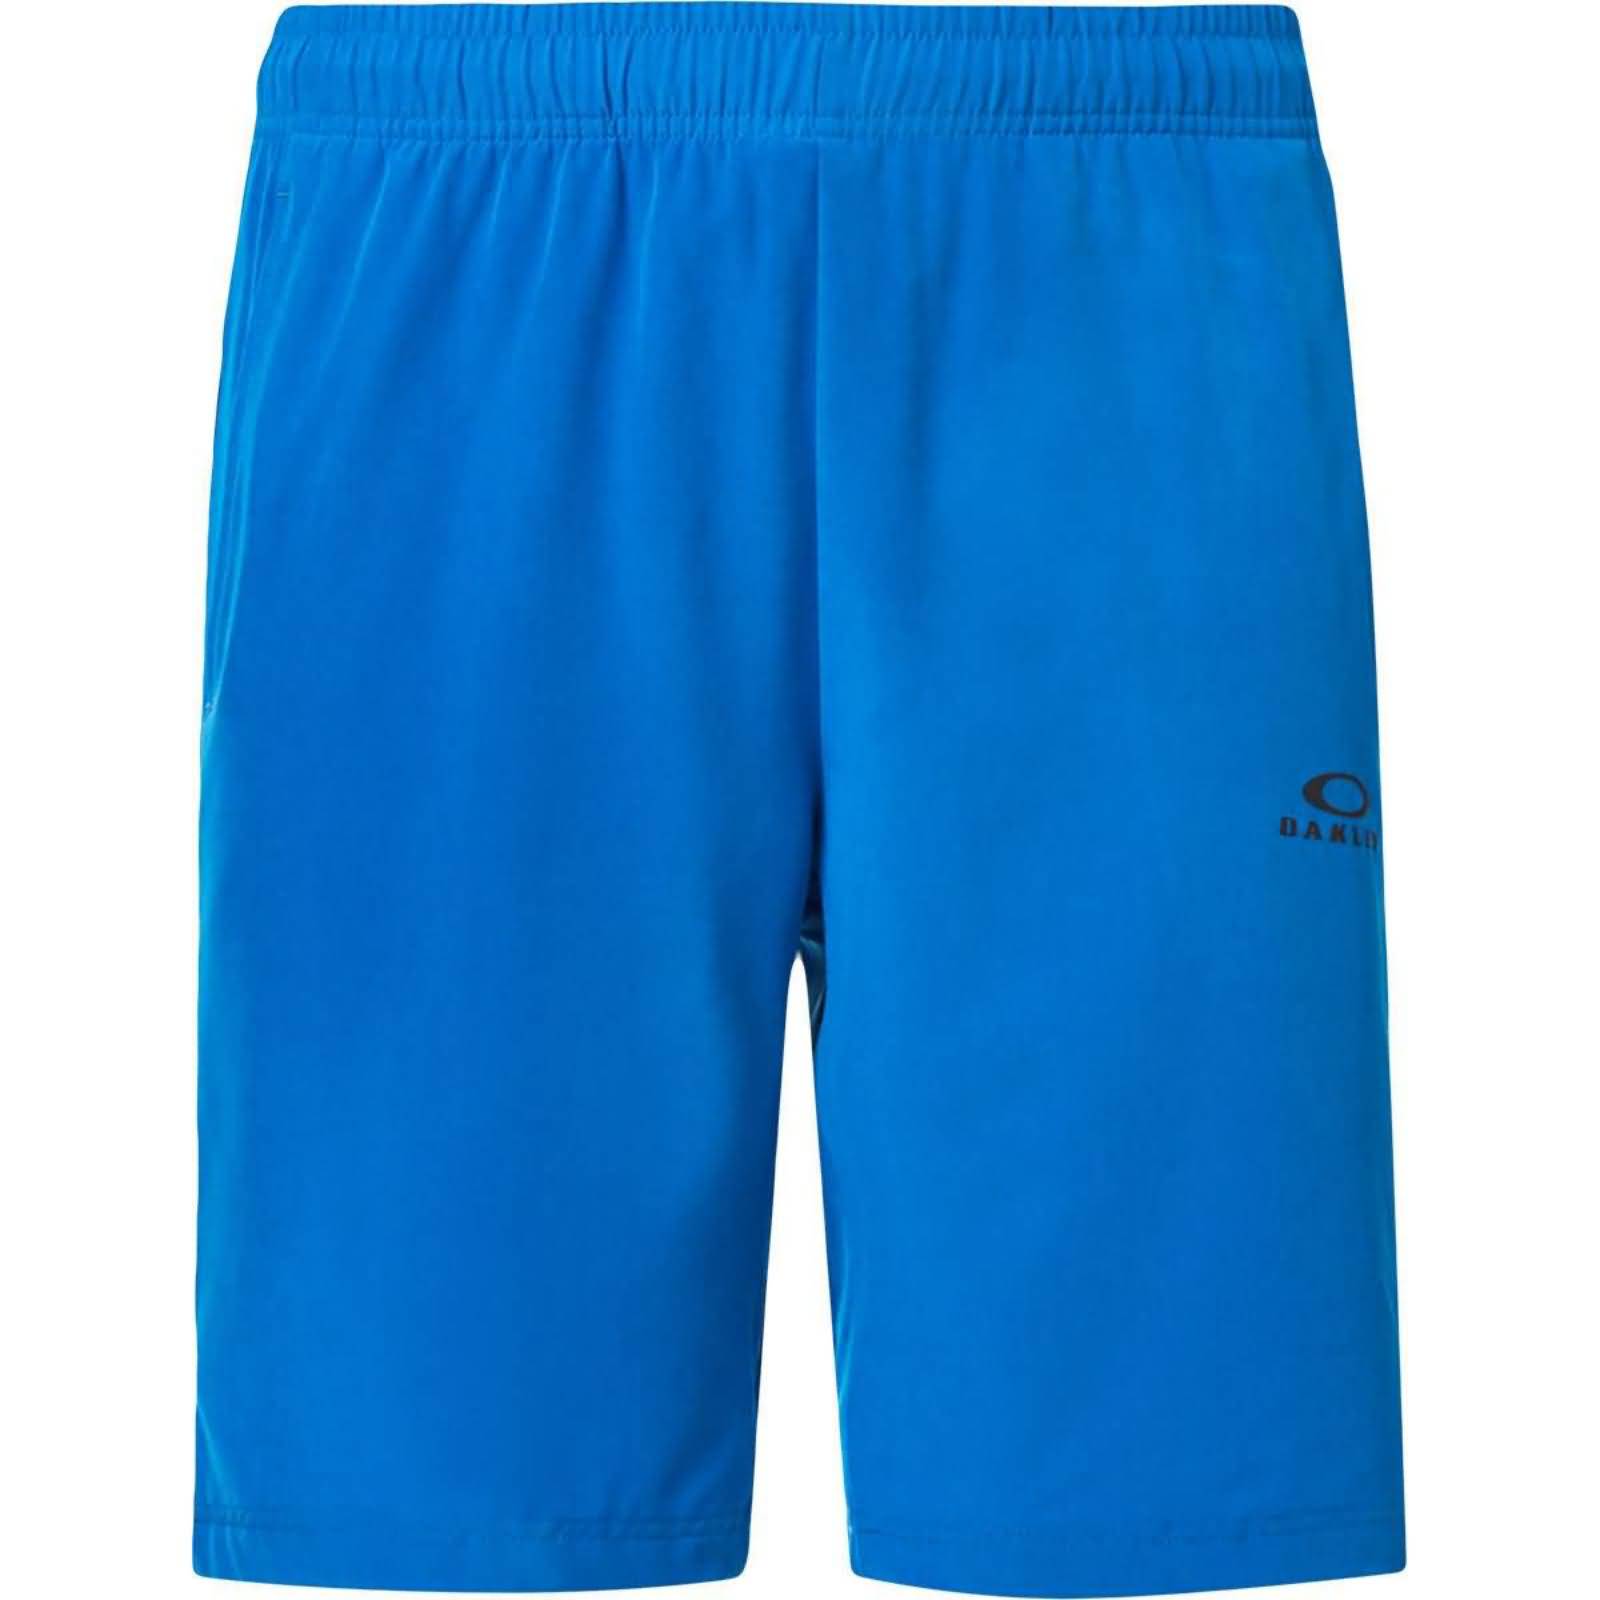 Oakley Foundational 9 2.0 Men's Shorts-FOA402746